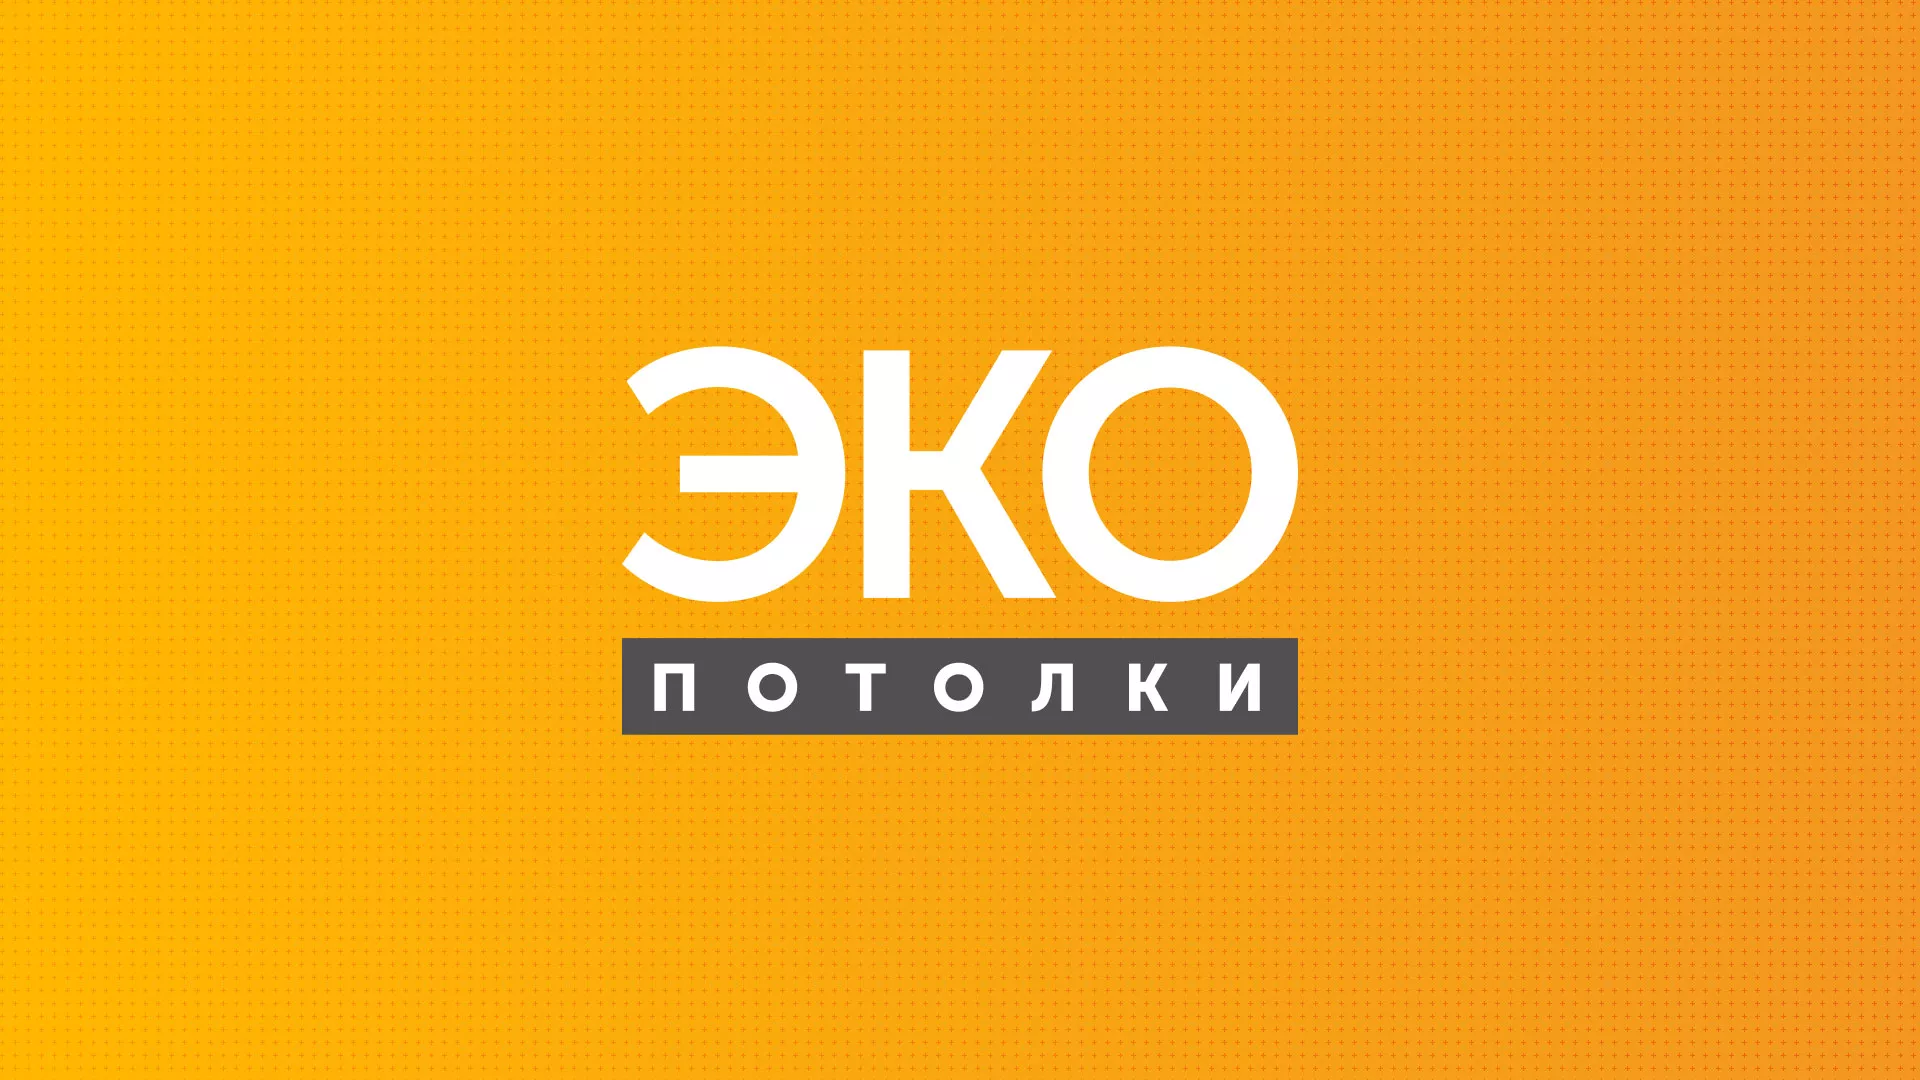 Разработка сайта по натяжным потолкам «Эко Потолки» в Дальнегорске